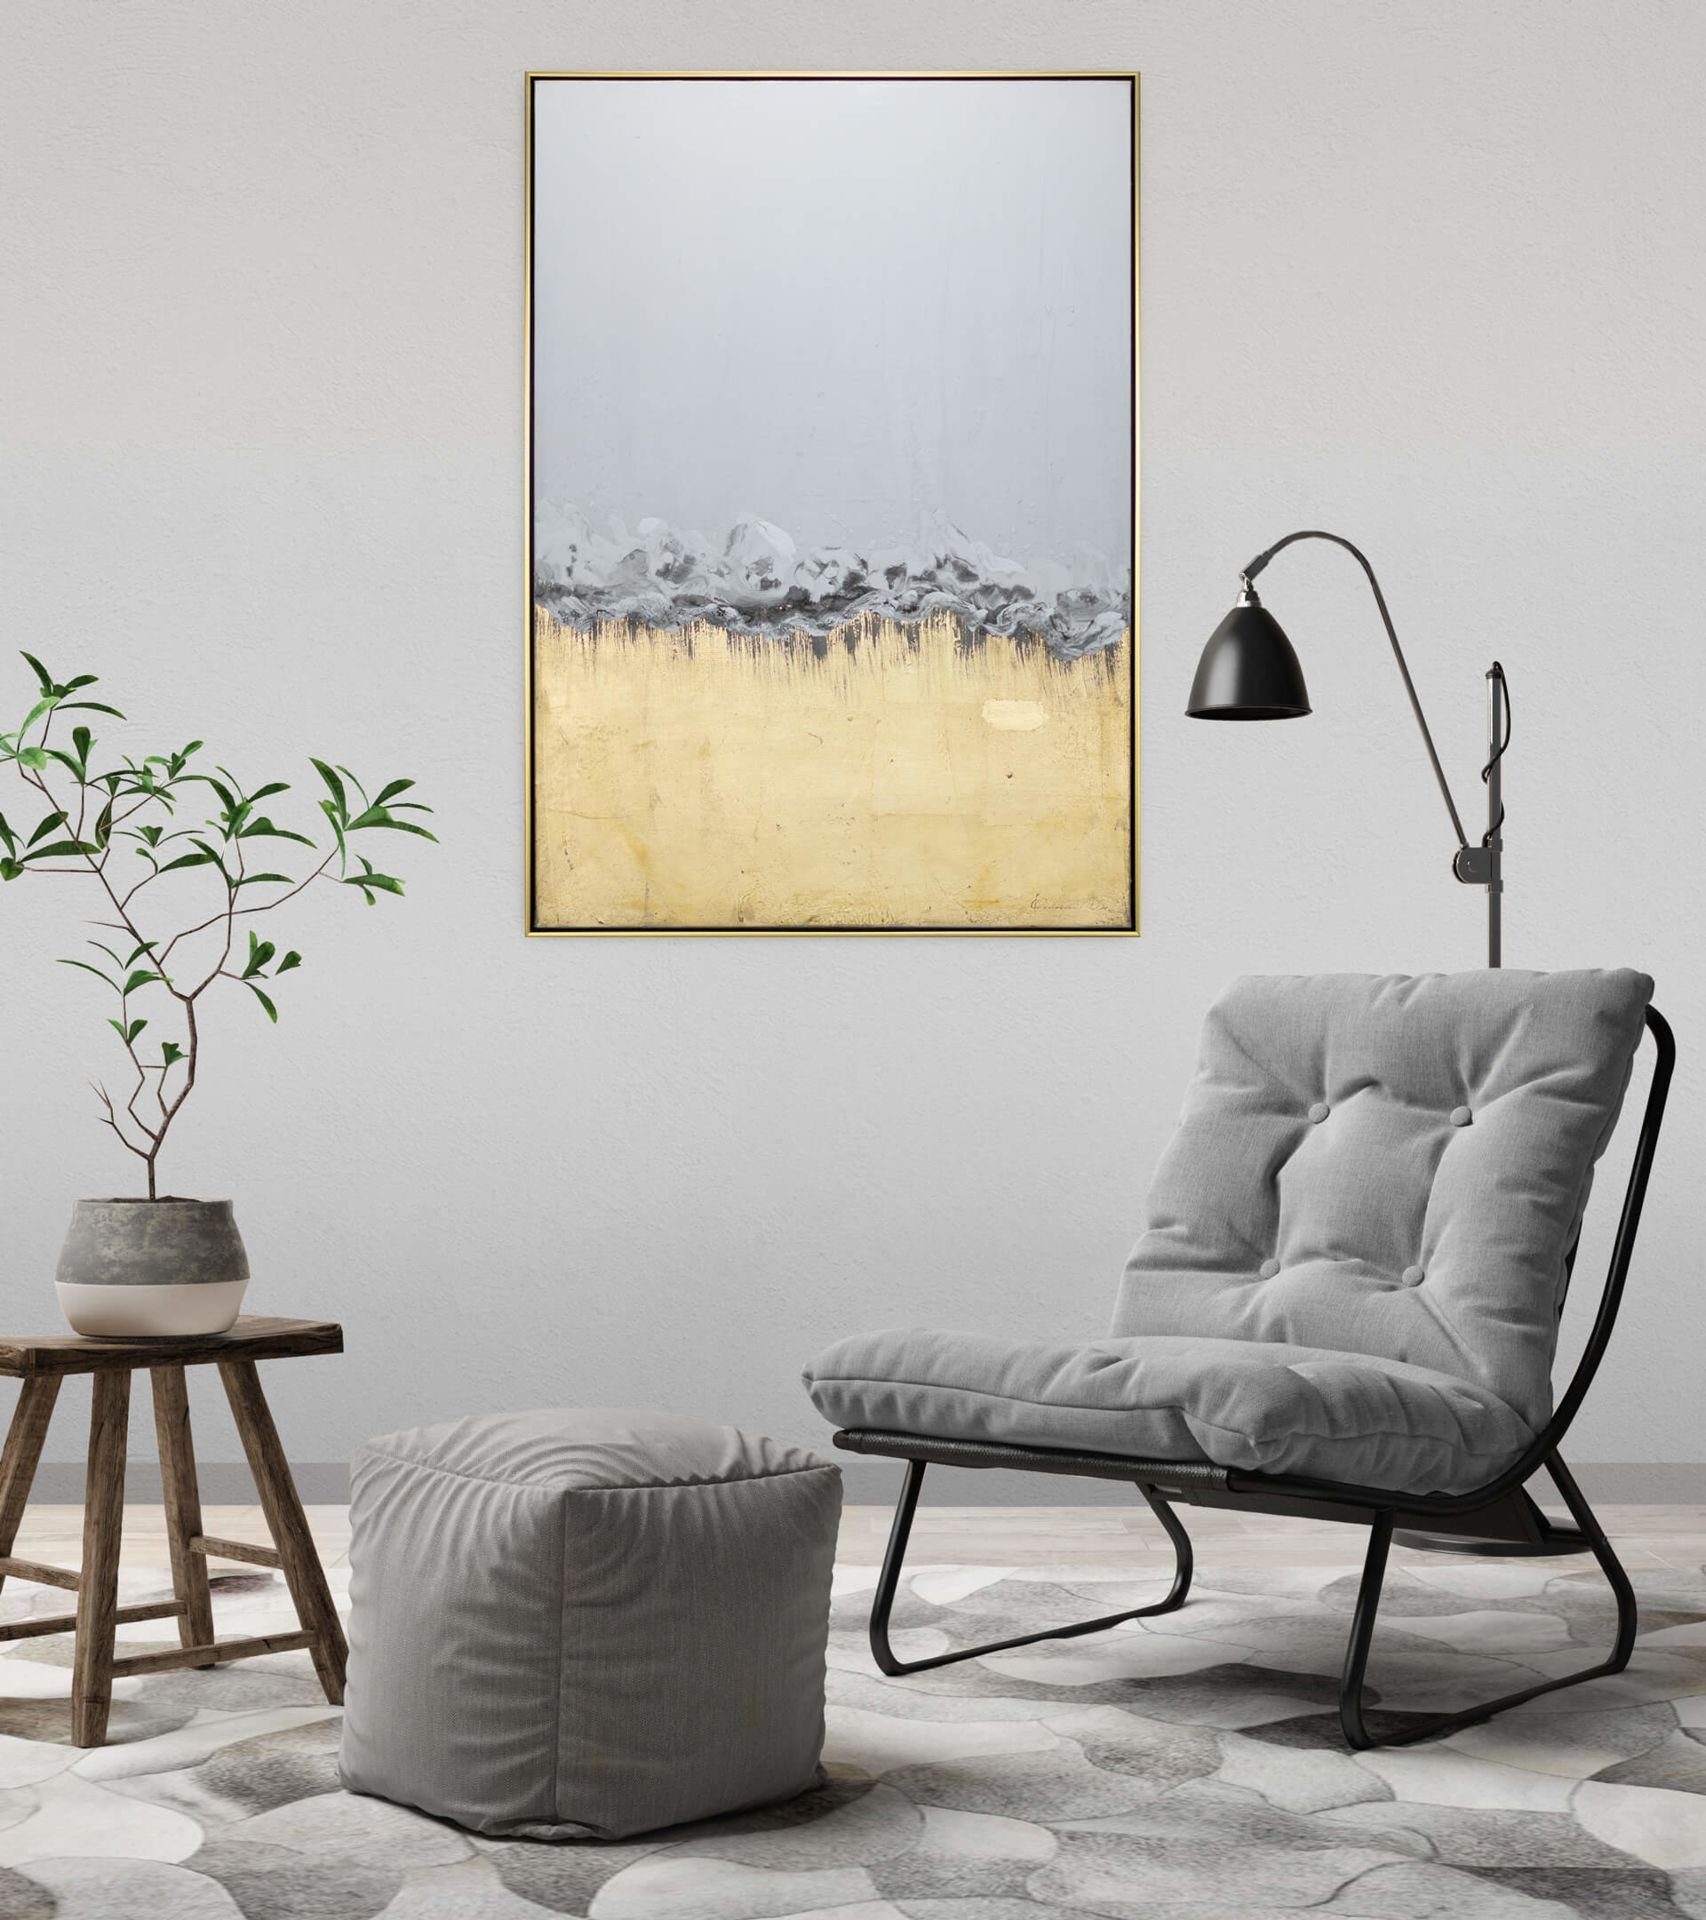 cm, Himmelreich 100% Wandbild Gemälde 77.5x102.5 Leinwandbild HANDGEMALT Goldenes Wohnzimmer KUNSTLOFT